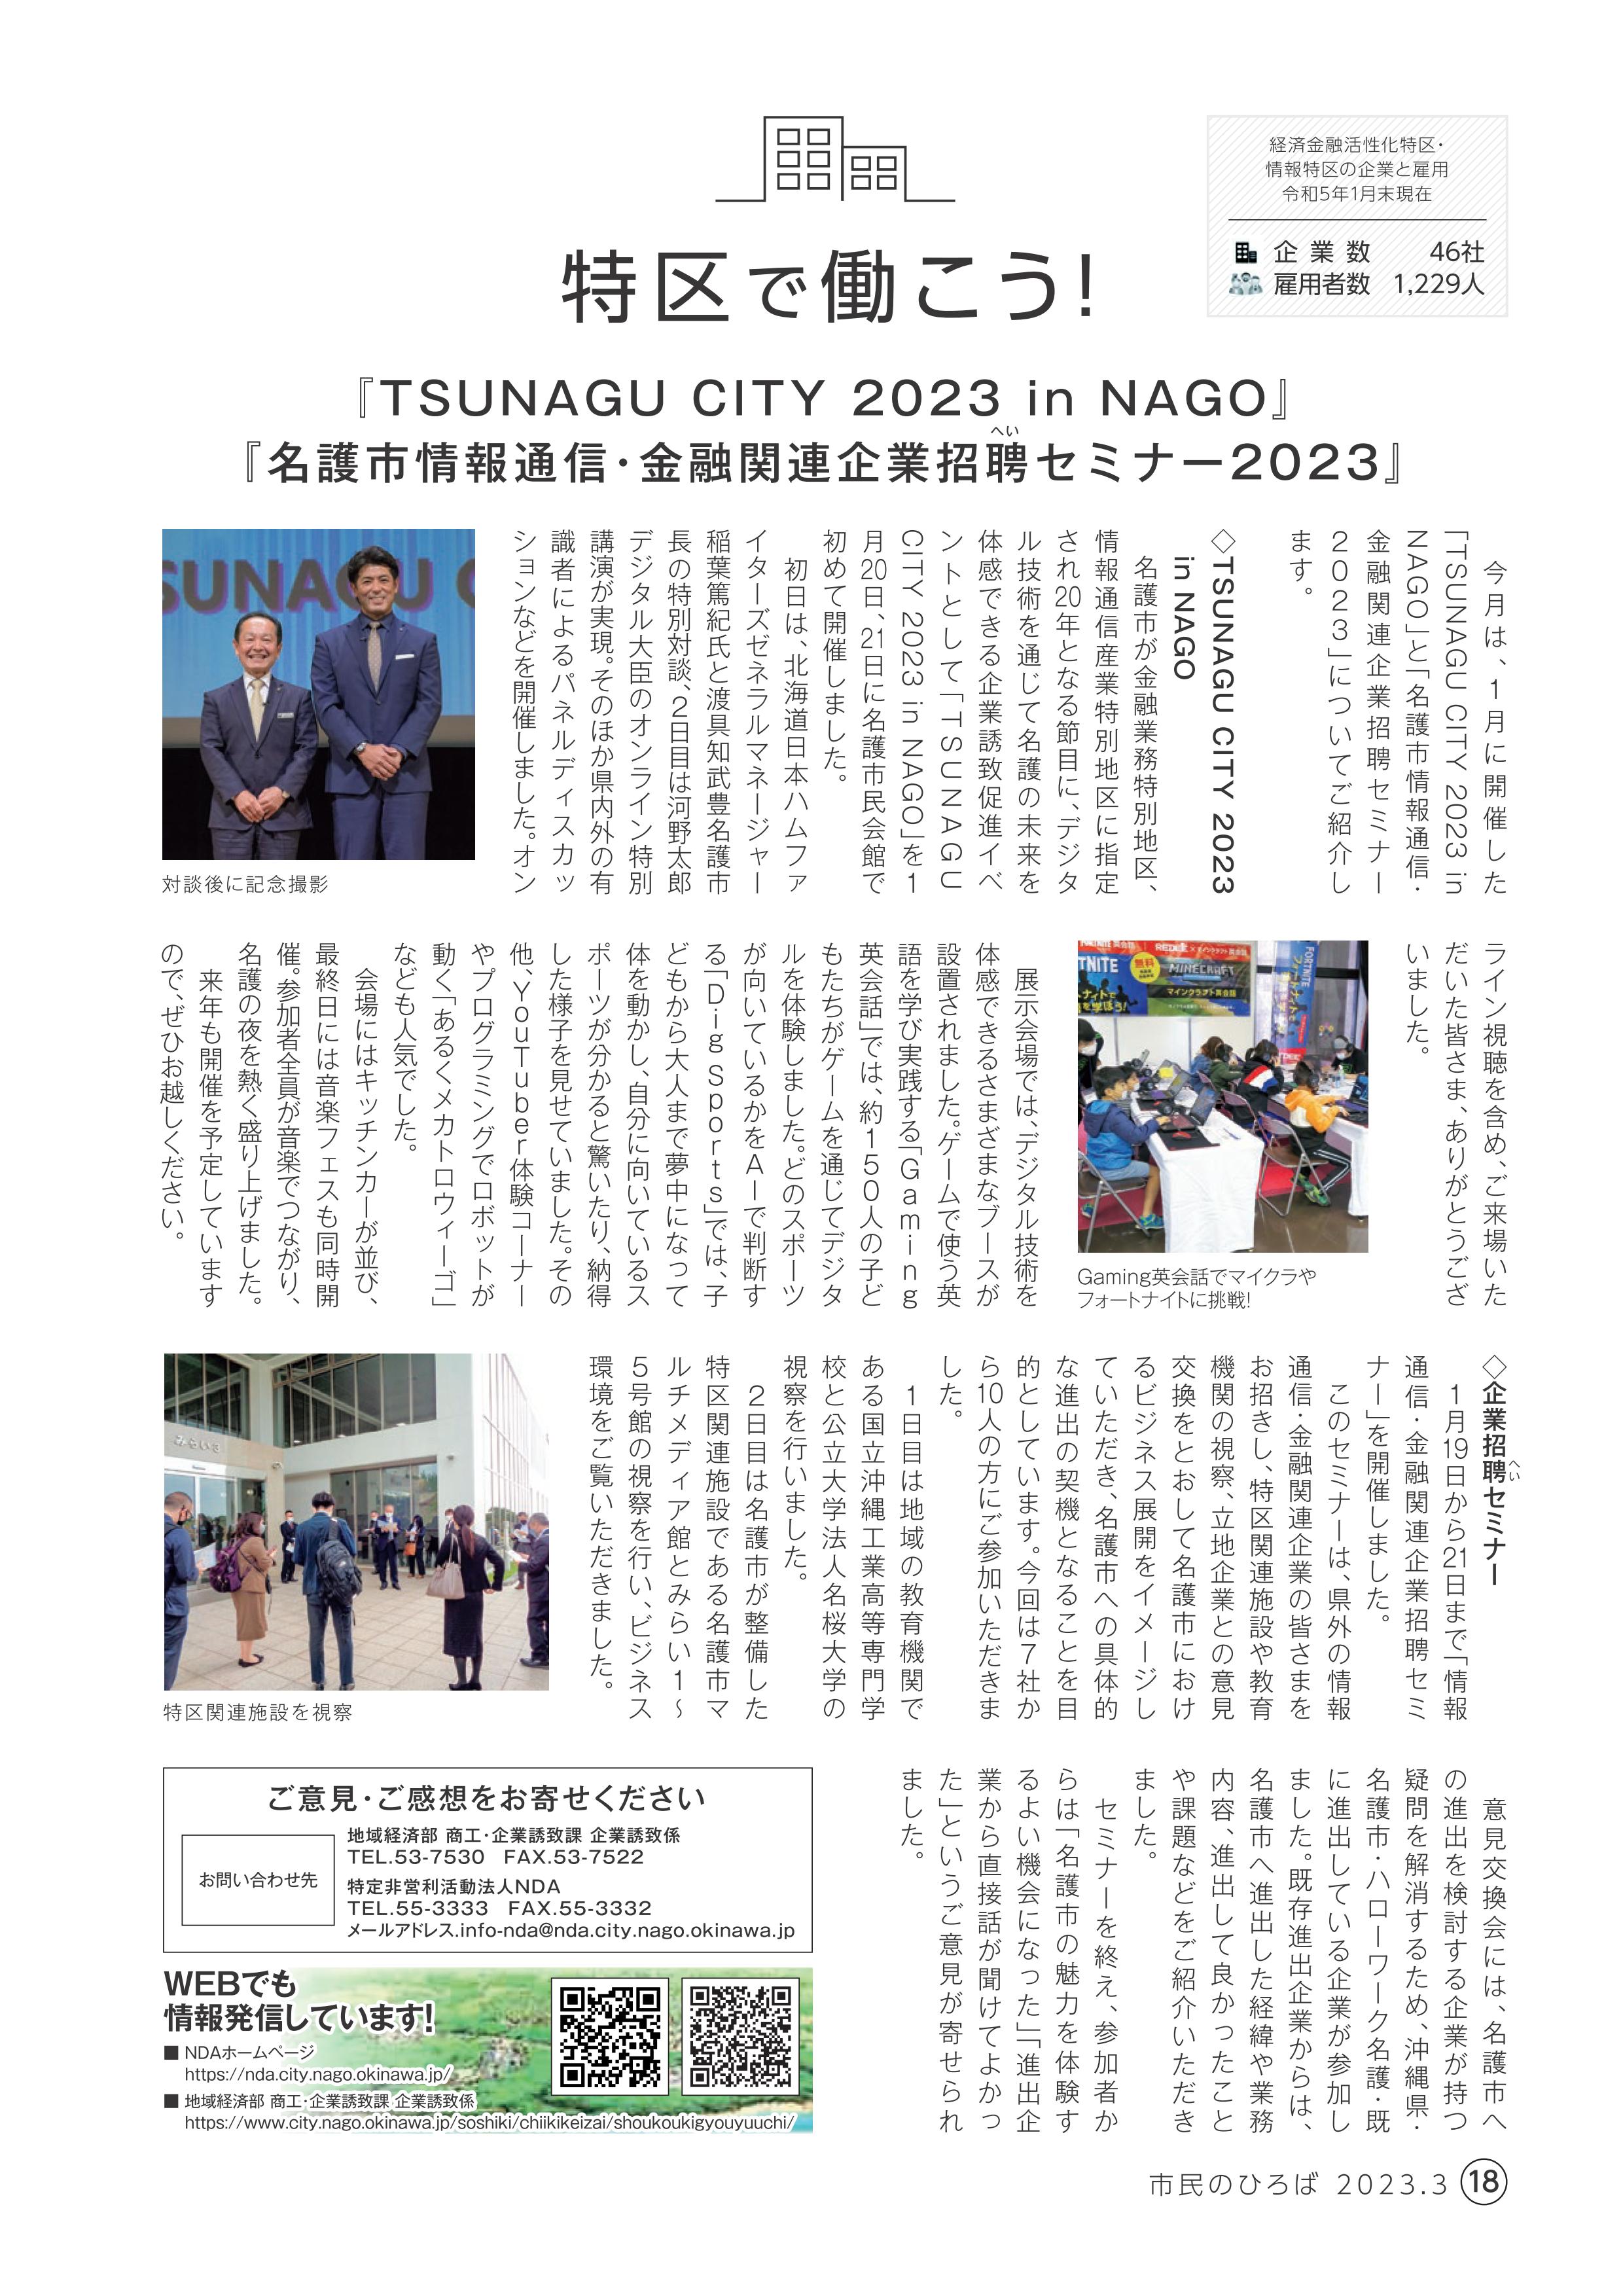 <p>2023年度　3月号</p>

<p>『TSUNAGU CITY 2023 in NAGO』</p>

<p>『名護市情報通信・金融関連企業招聘セミナー2023』    </p>
